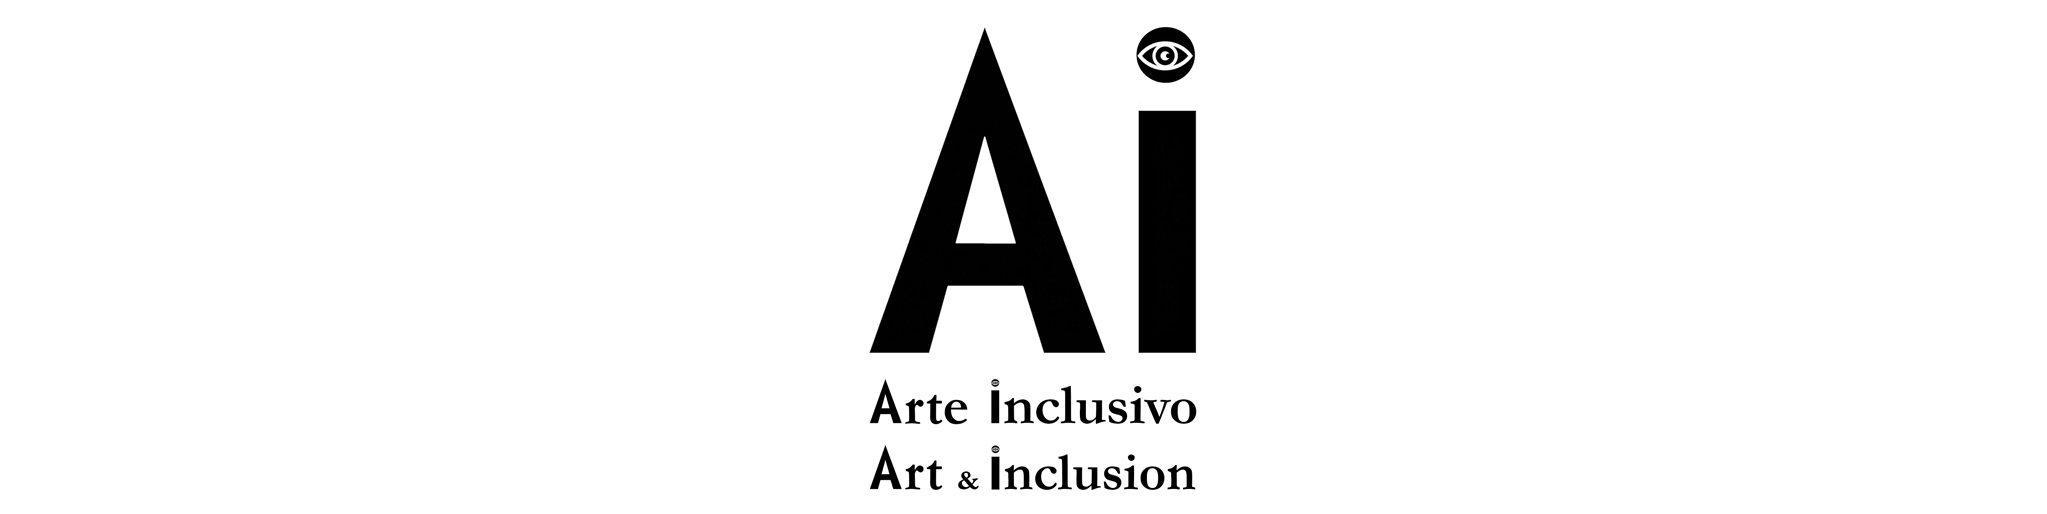 Arte inclusivo – Art & Inclusion